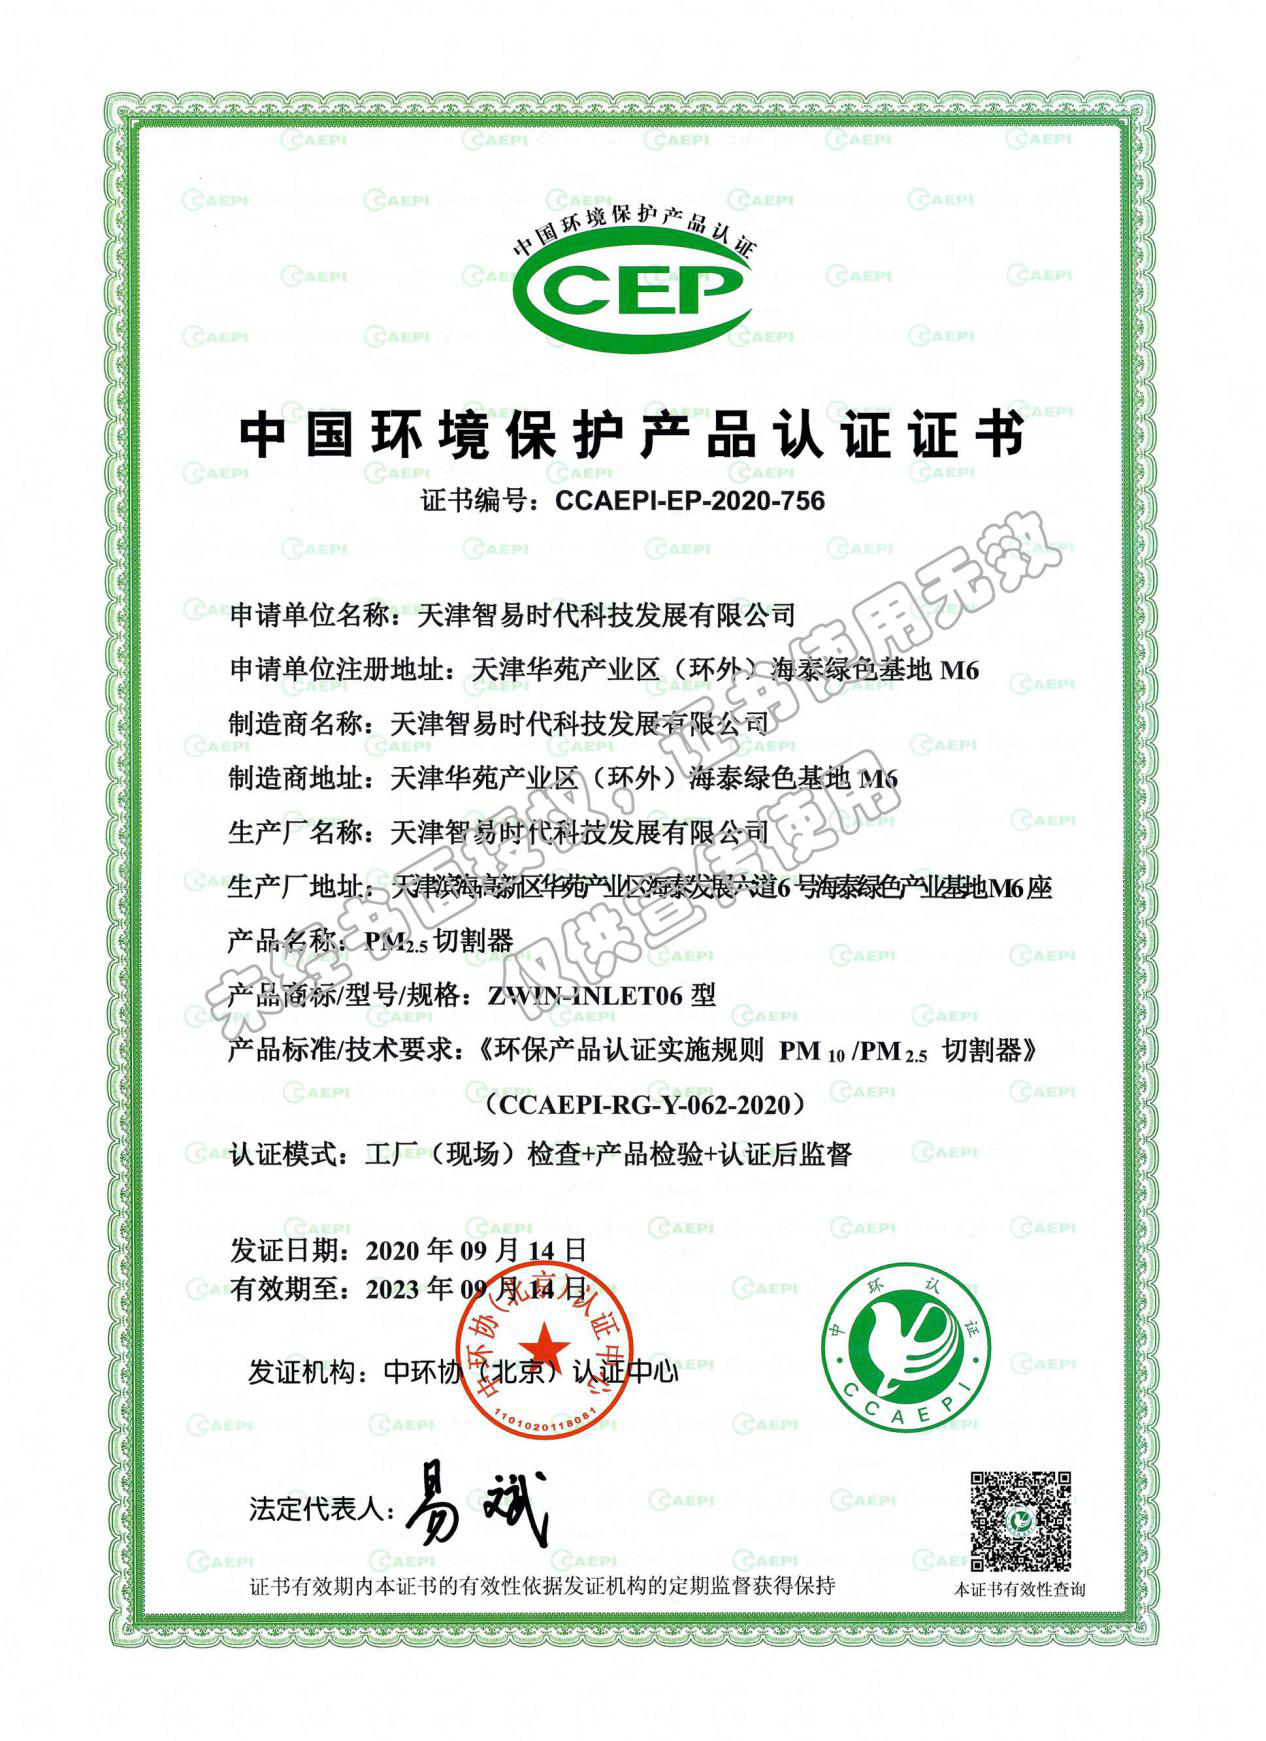 喜报！祝贺我司扬尘在线监测设备荣获三项CCEP产品认证证书